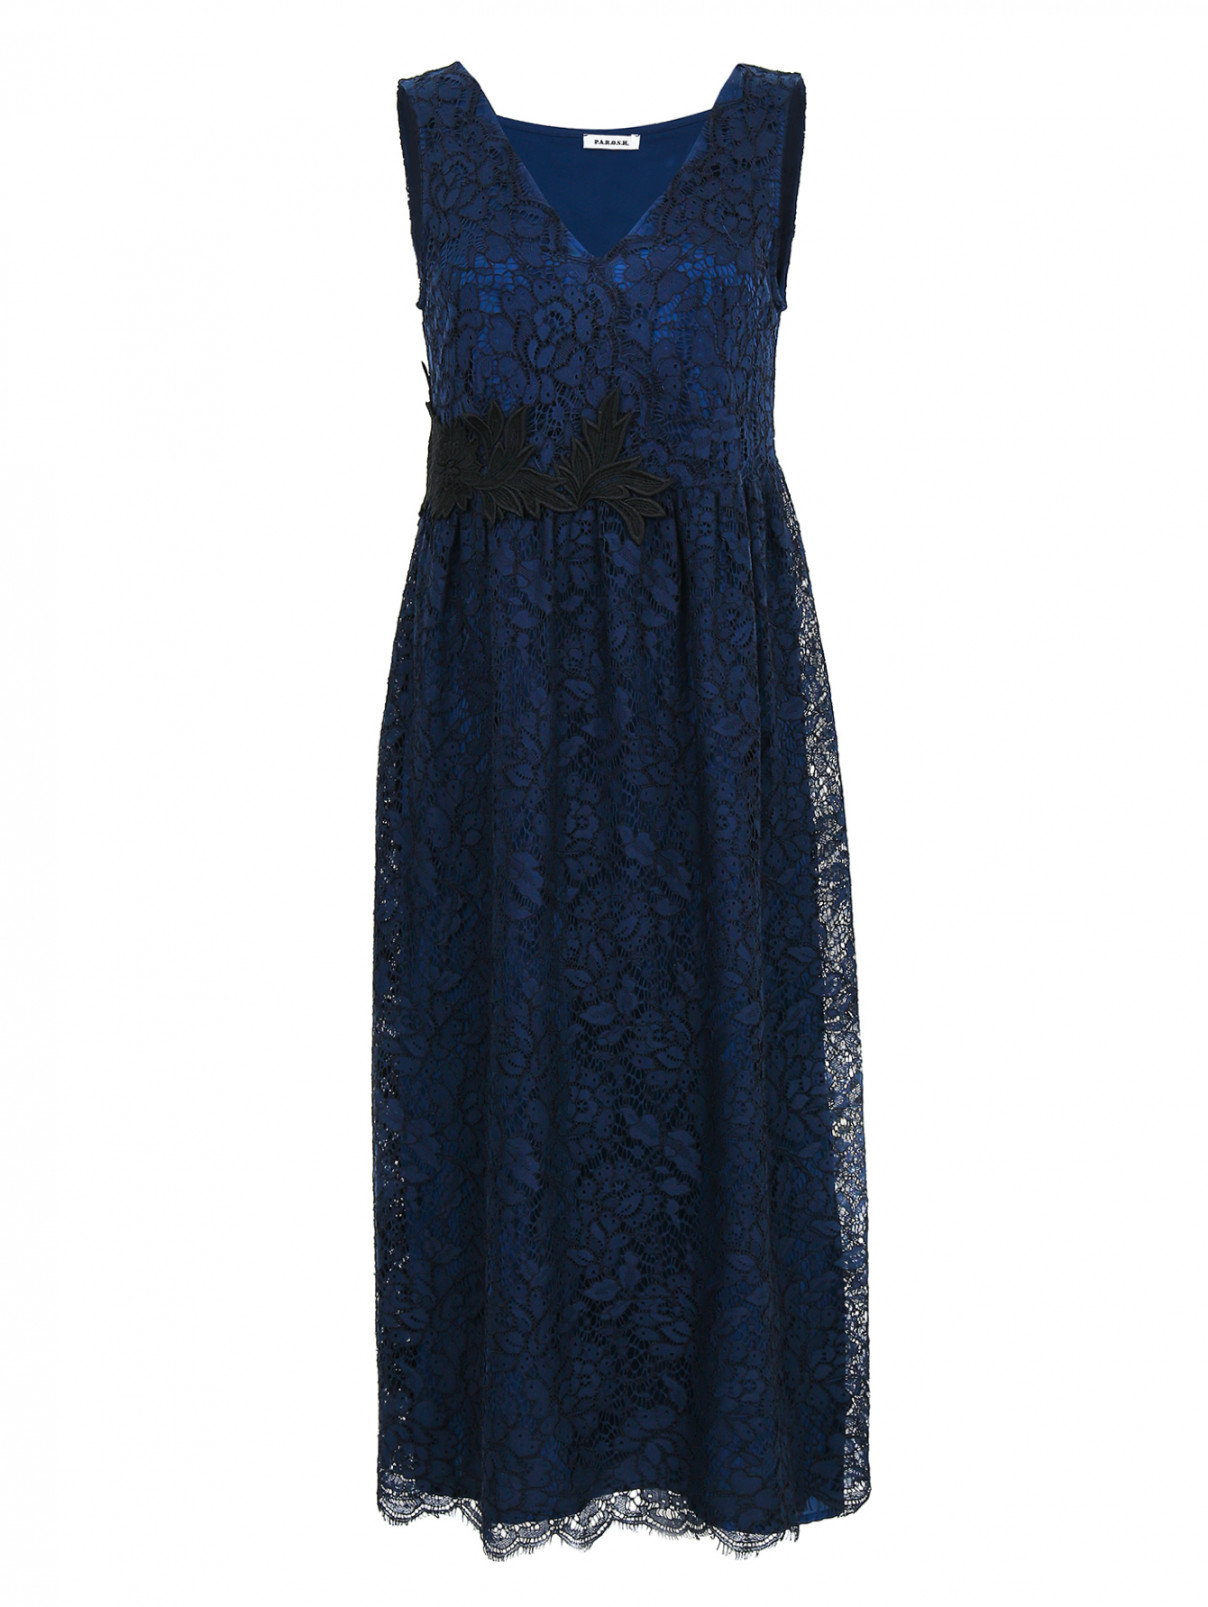 Платье с кружевным узором, и декоративной отделкой P.A.R.O.S.H.  –  Общий вид  – Цвет:  Синий